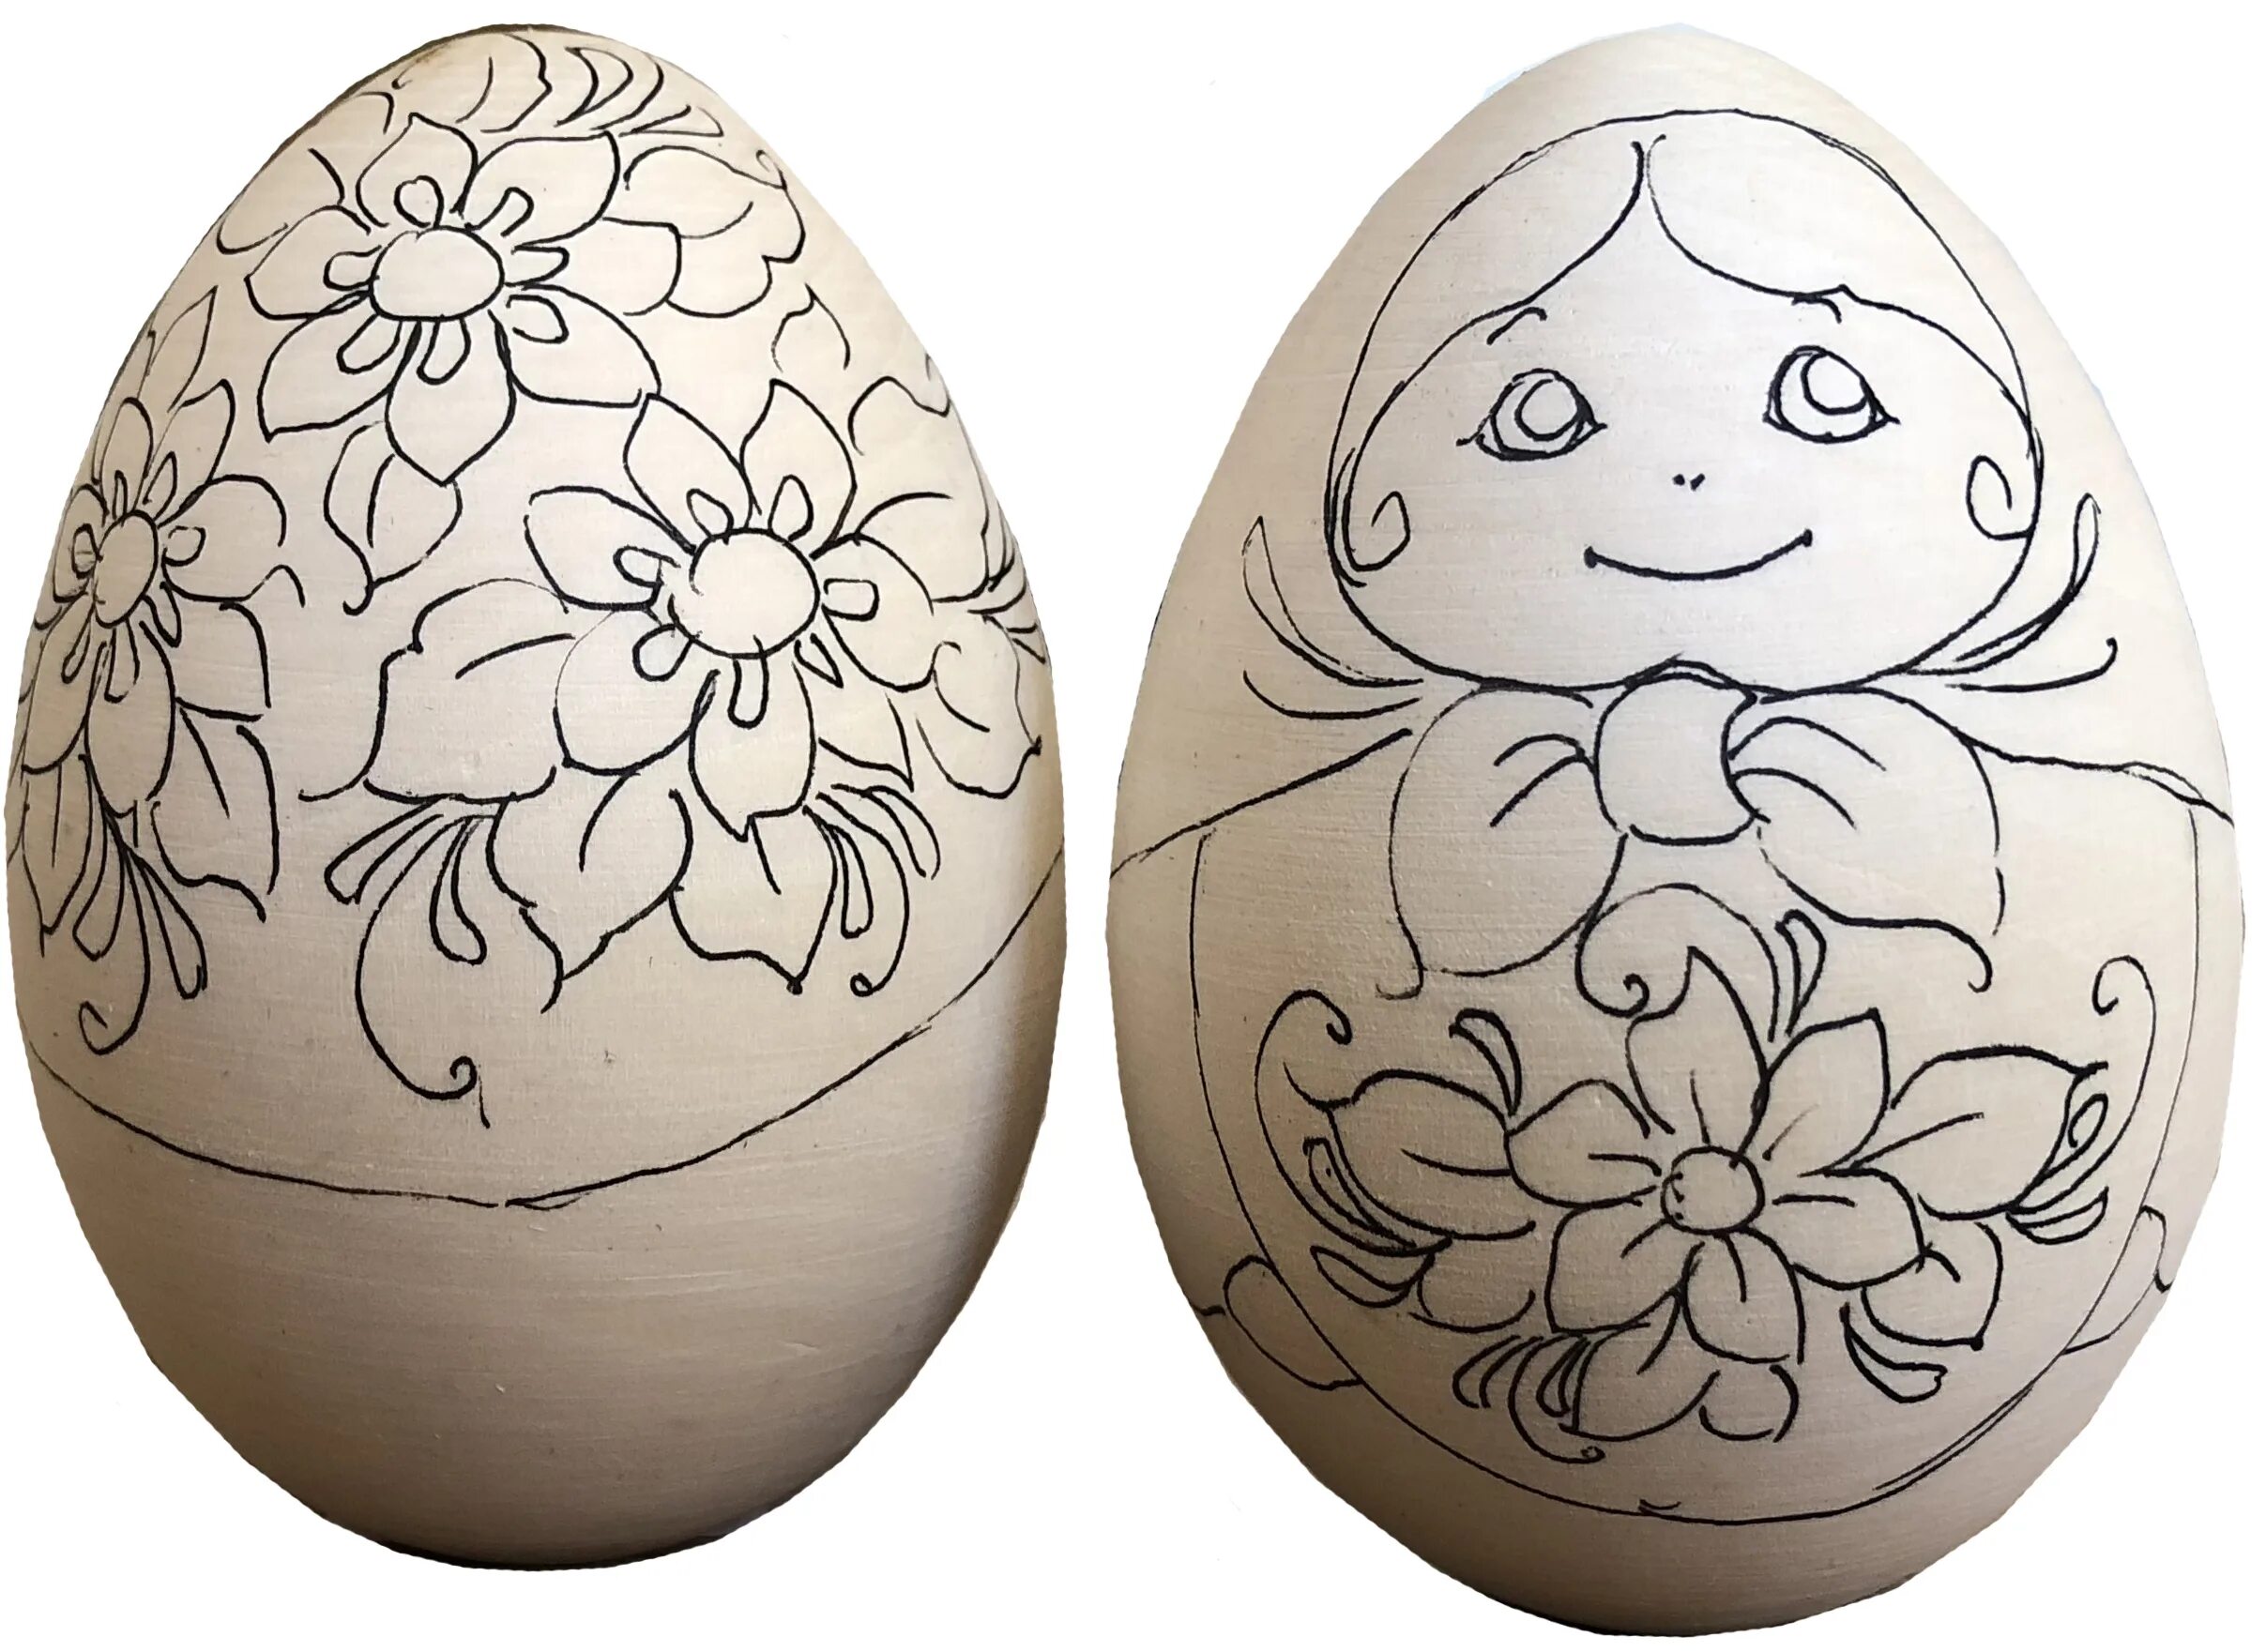 Заготовка пасхального яйца. Расписать деревянное яйцо. Раскрашивание деревянных яиц. Роспись деревянных яиц к Пасхе. Деревянные пасхальные яйца роспись.